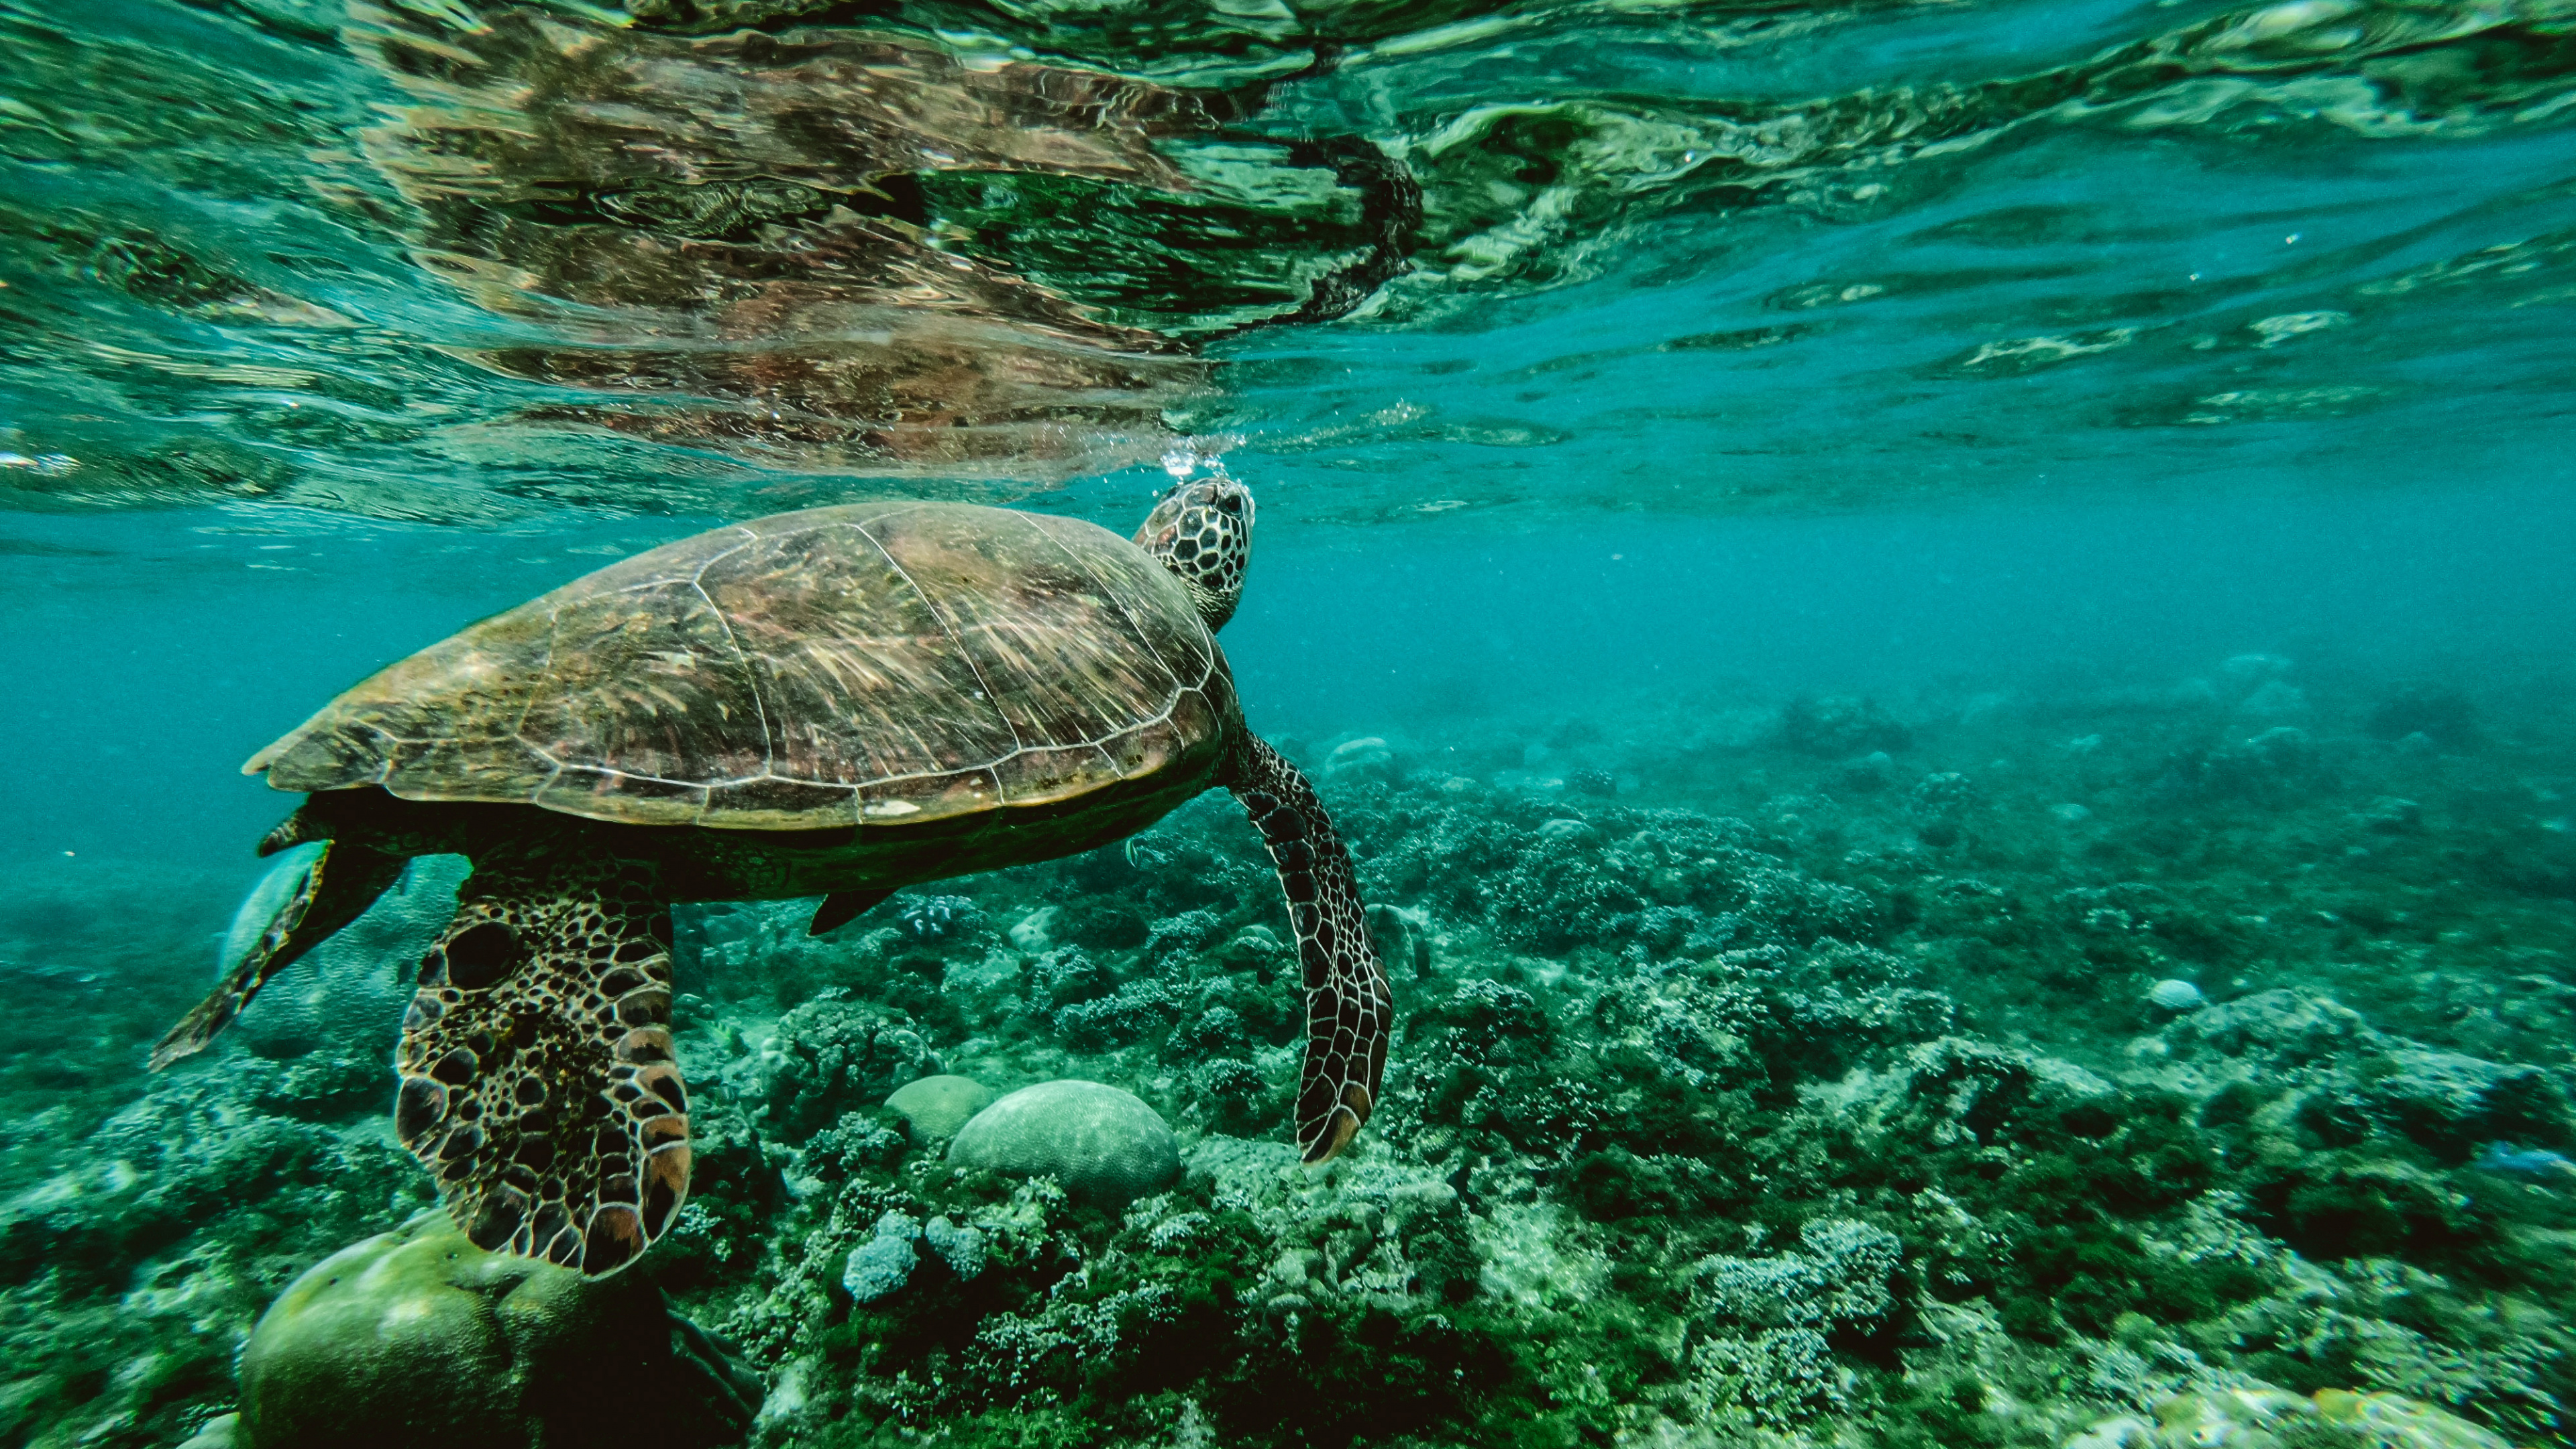 Braune Schildkröte Tagsüber im Wasser. Wallpaper in 3840x2160 Resolution